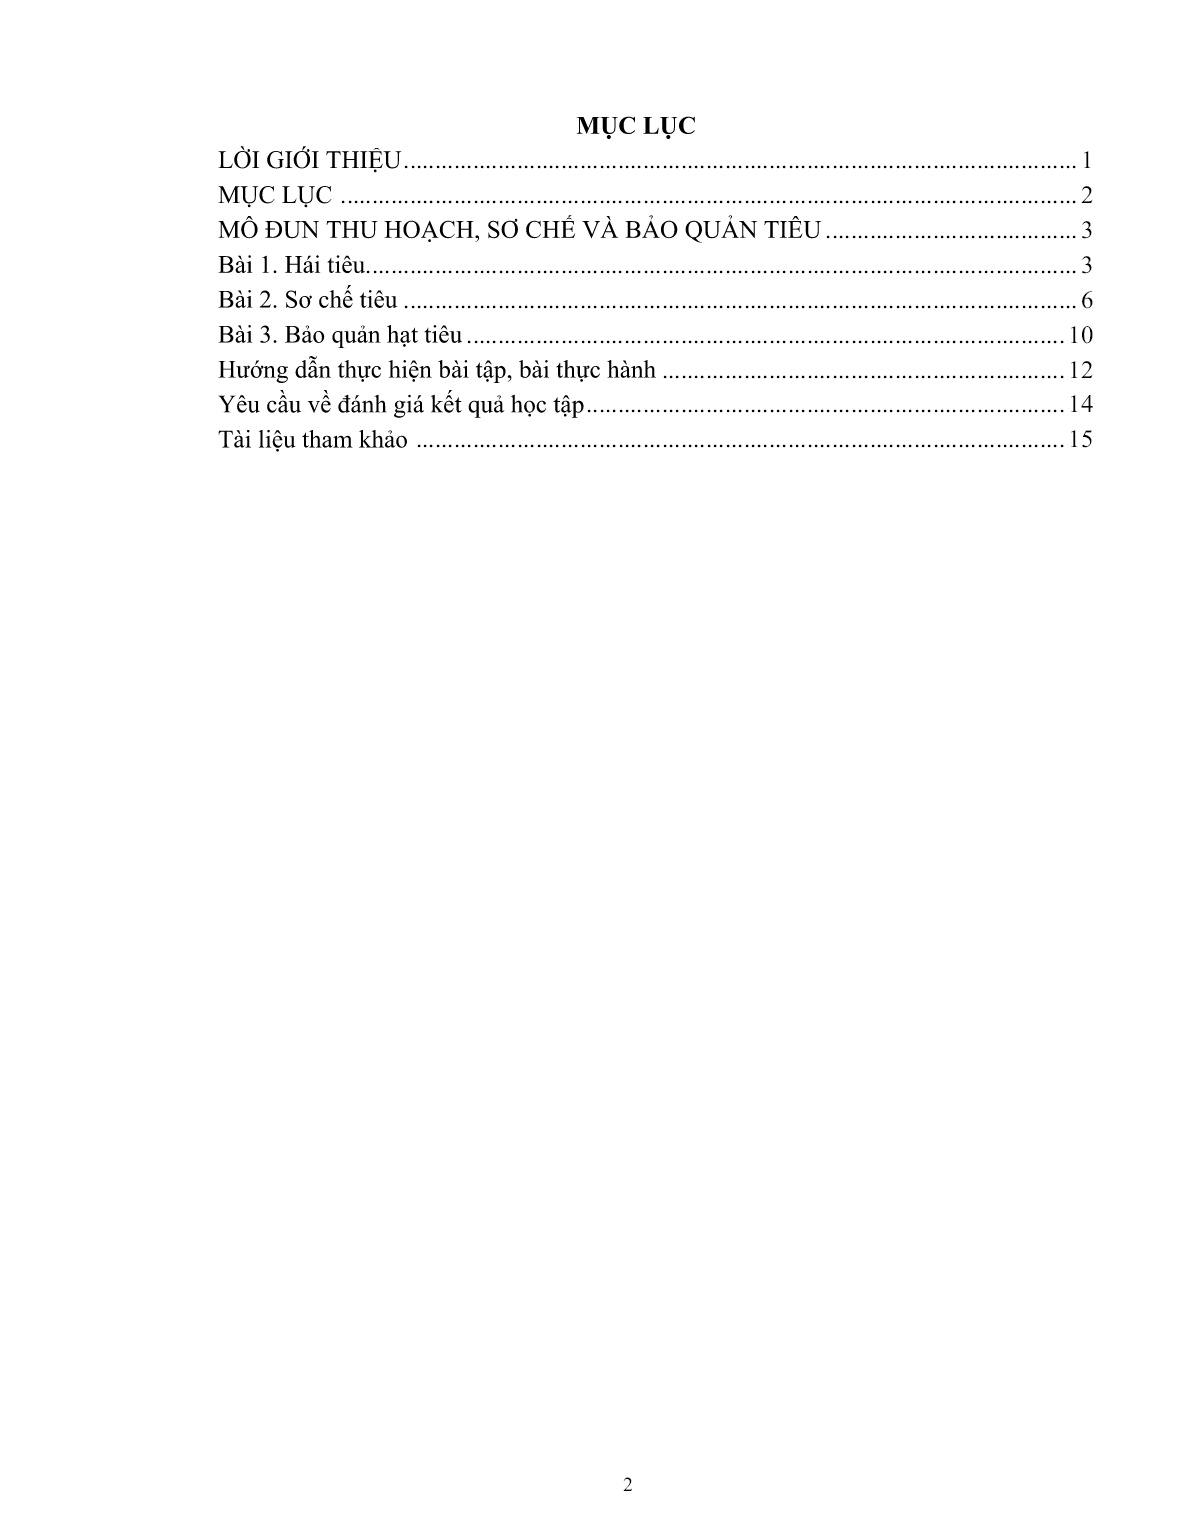 Giáo trình mô đun Thu hoạch, sơ chế và bảo quản tiêu (Trình độ: Đào tạo dưới 3 tháng) trang 3